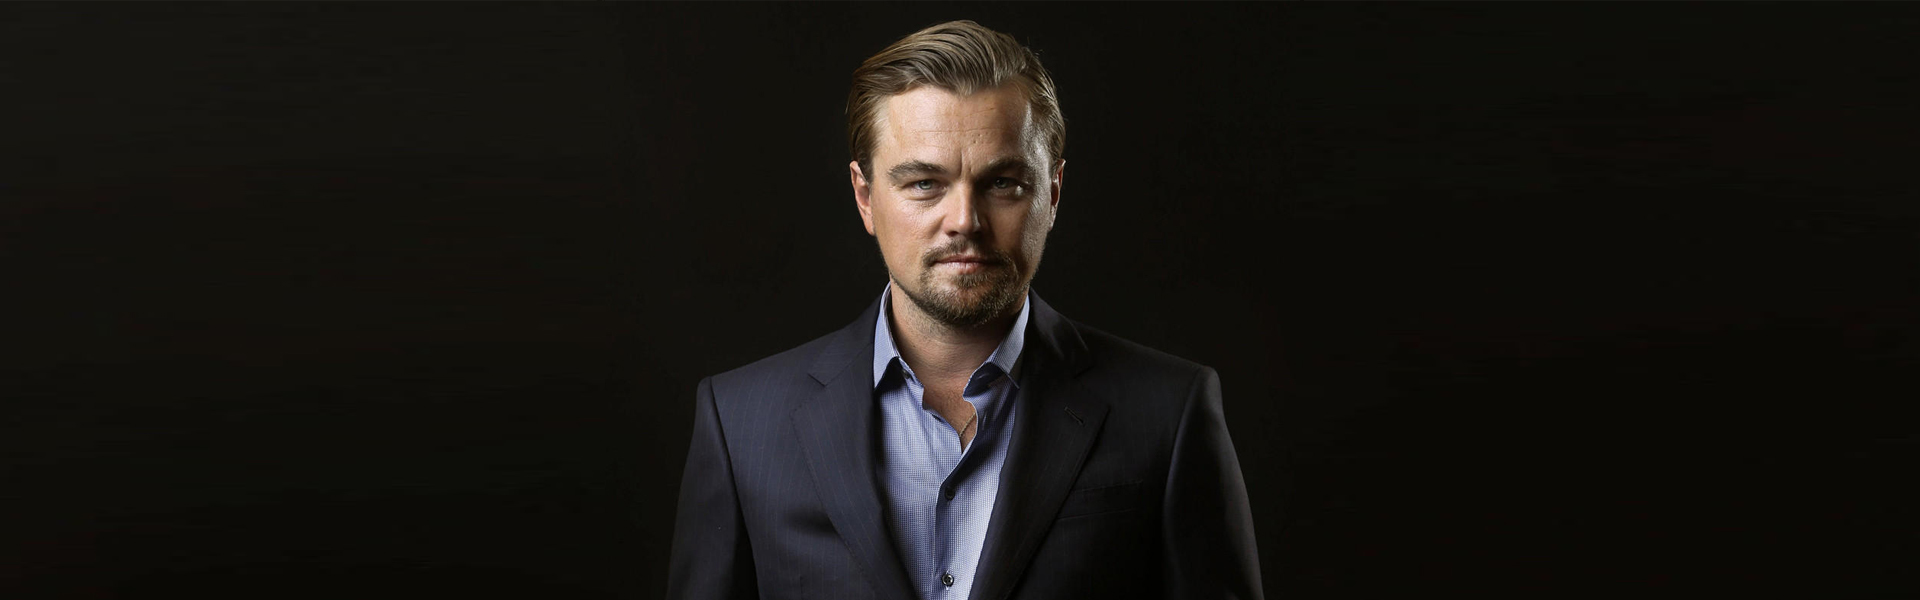 Top phim của Leonardo DiCaprio khiến bạn xem tới đâu, mê đến đó